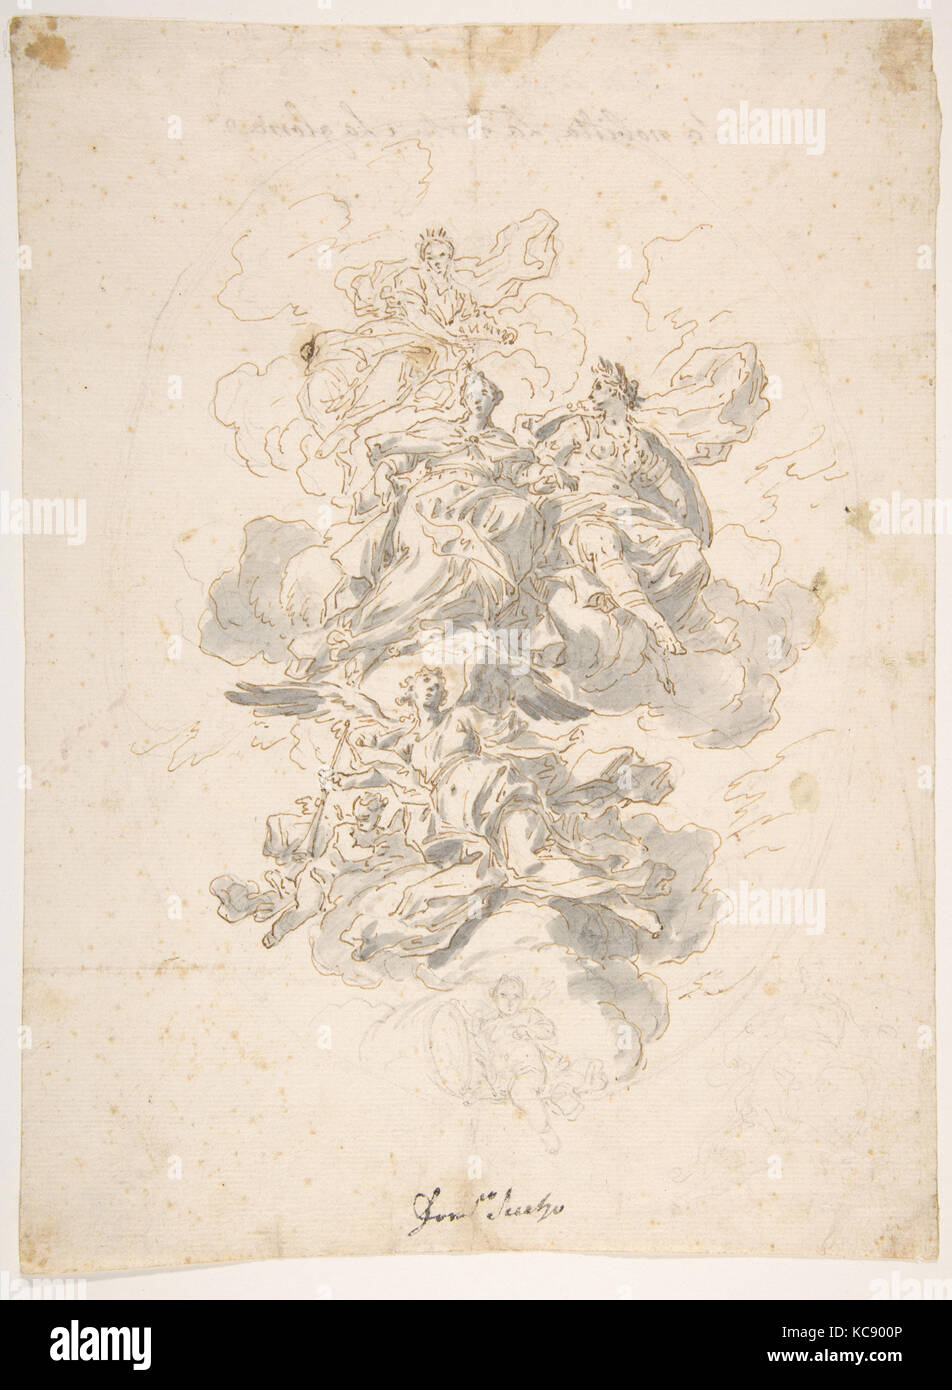 Groupe de figures allégoriques : Esquisse pour une décoration de plafond ?, Francesco Solimena, 1657-1747 Banque D'Images